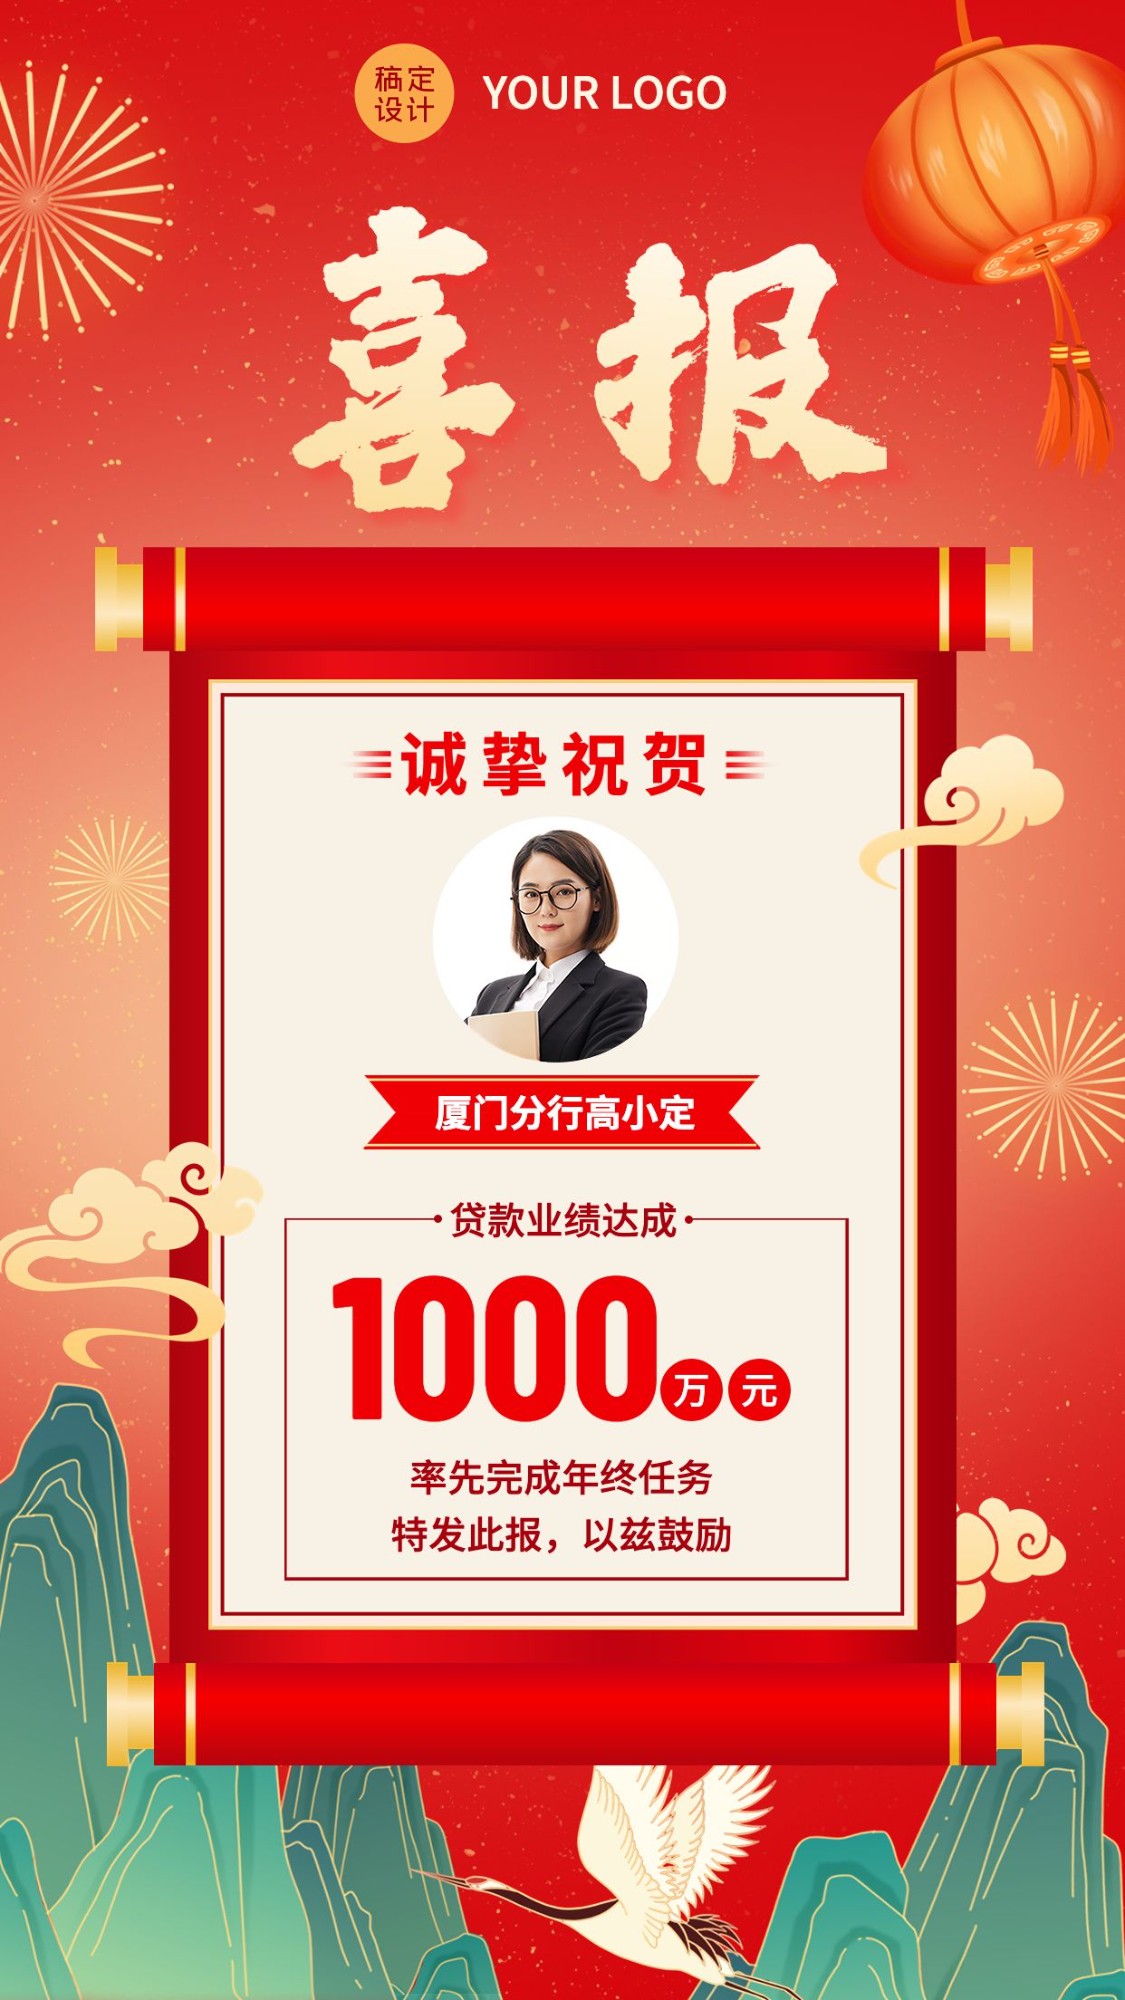 金融保险贷款业绩销售表彰喜报人物中国风插画手机海报